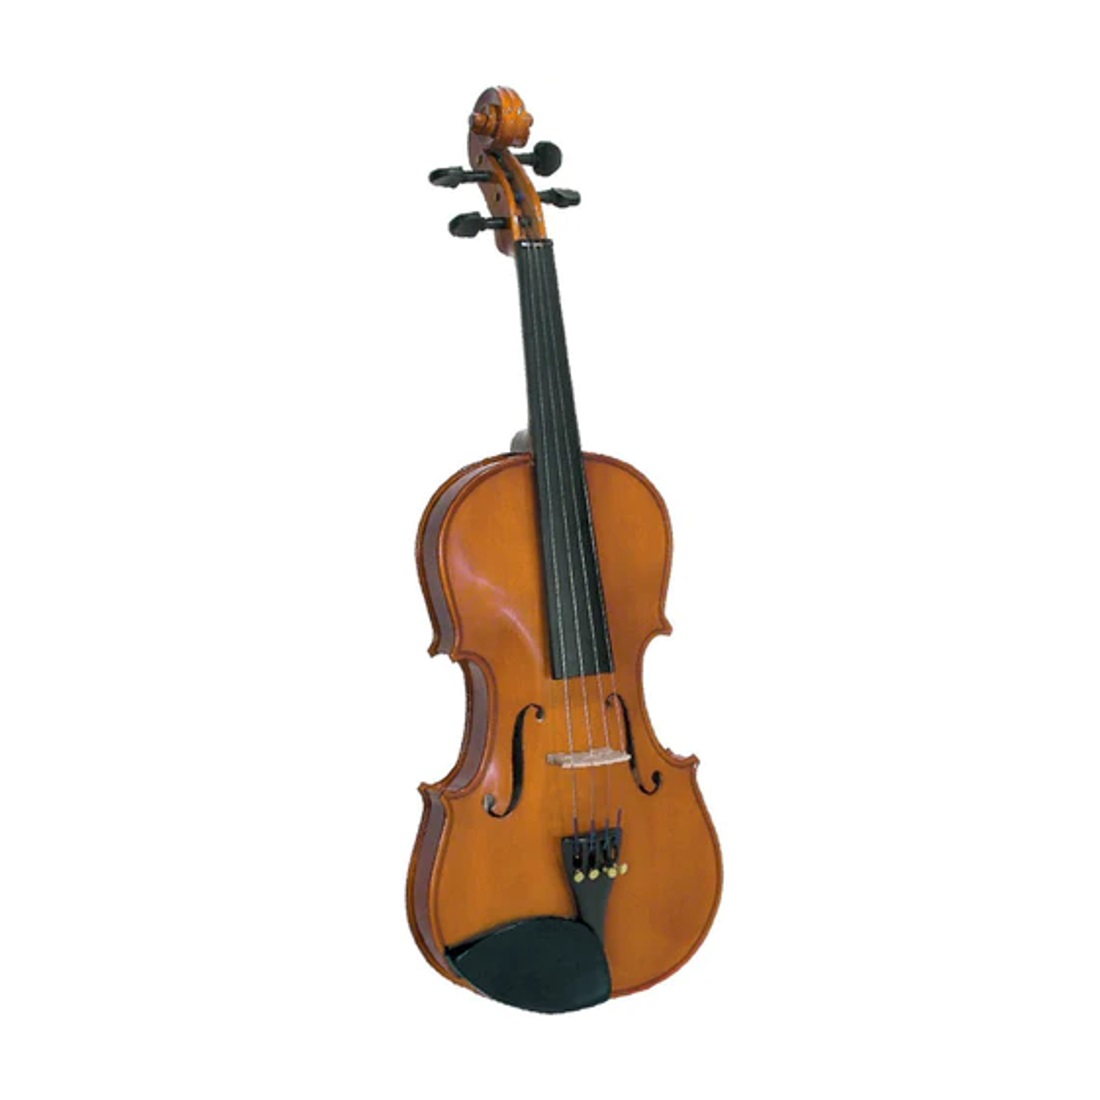 Cremona SV-75 Premier Novice Violin Outfit - 3/4 Size